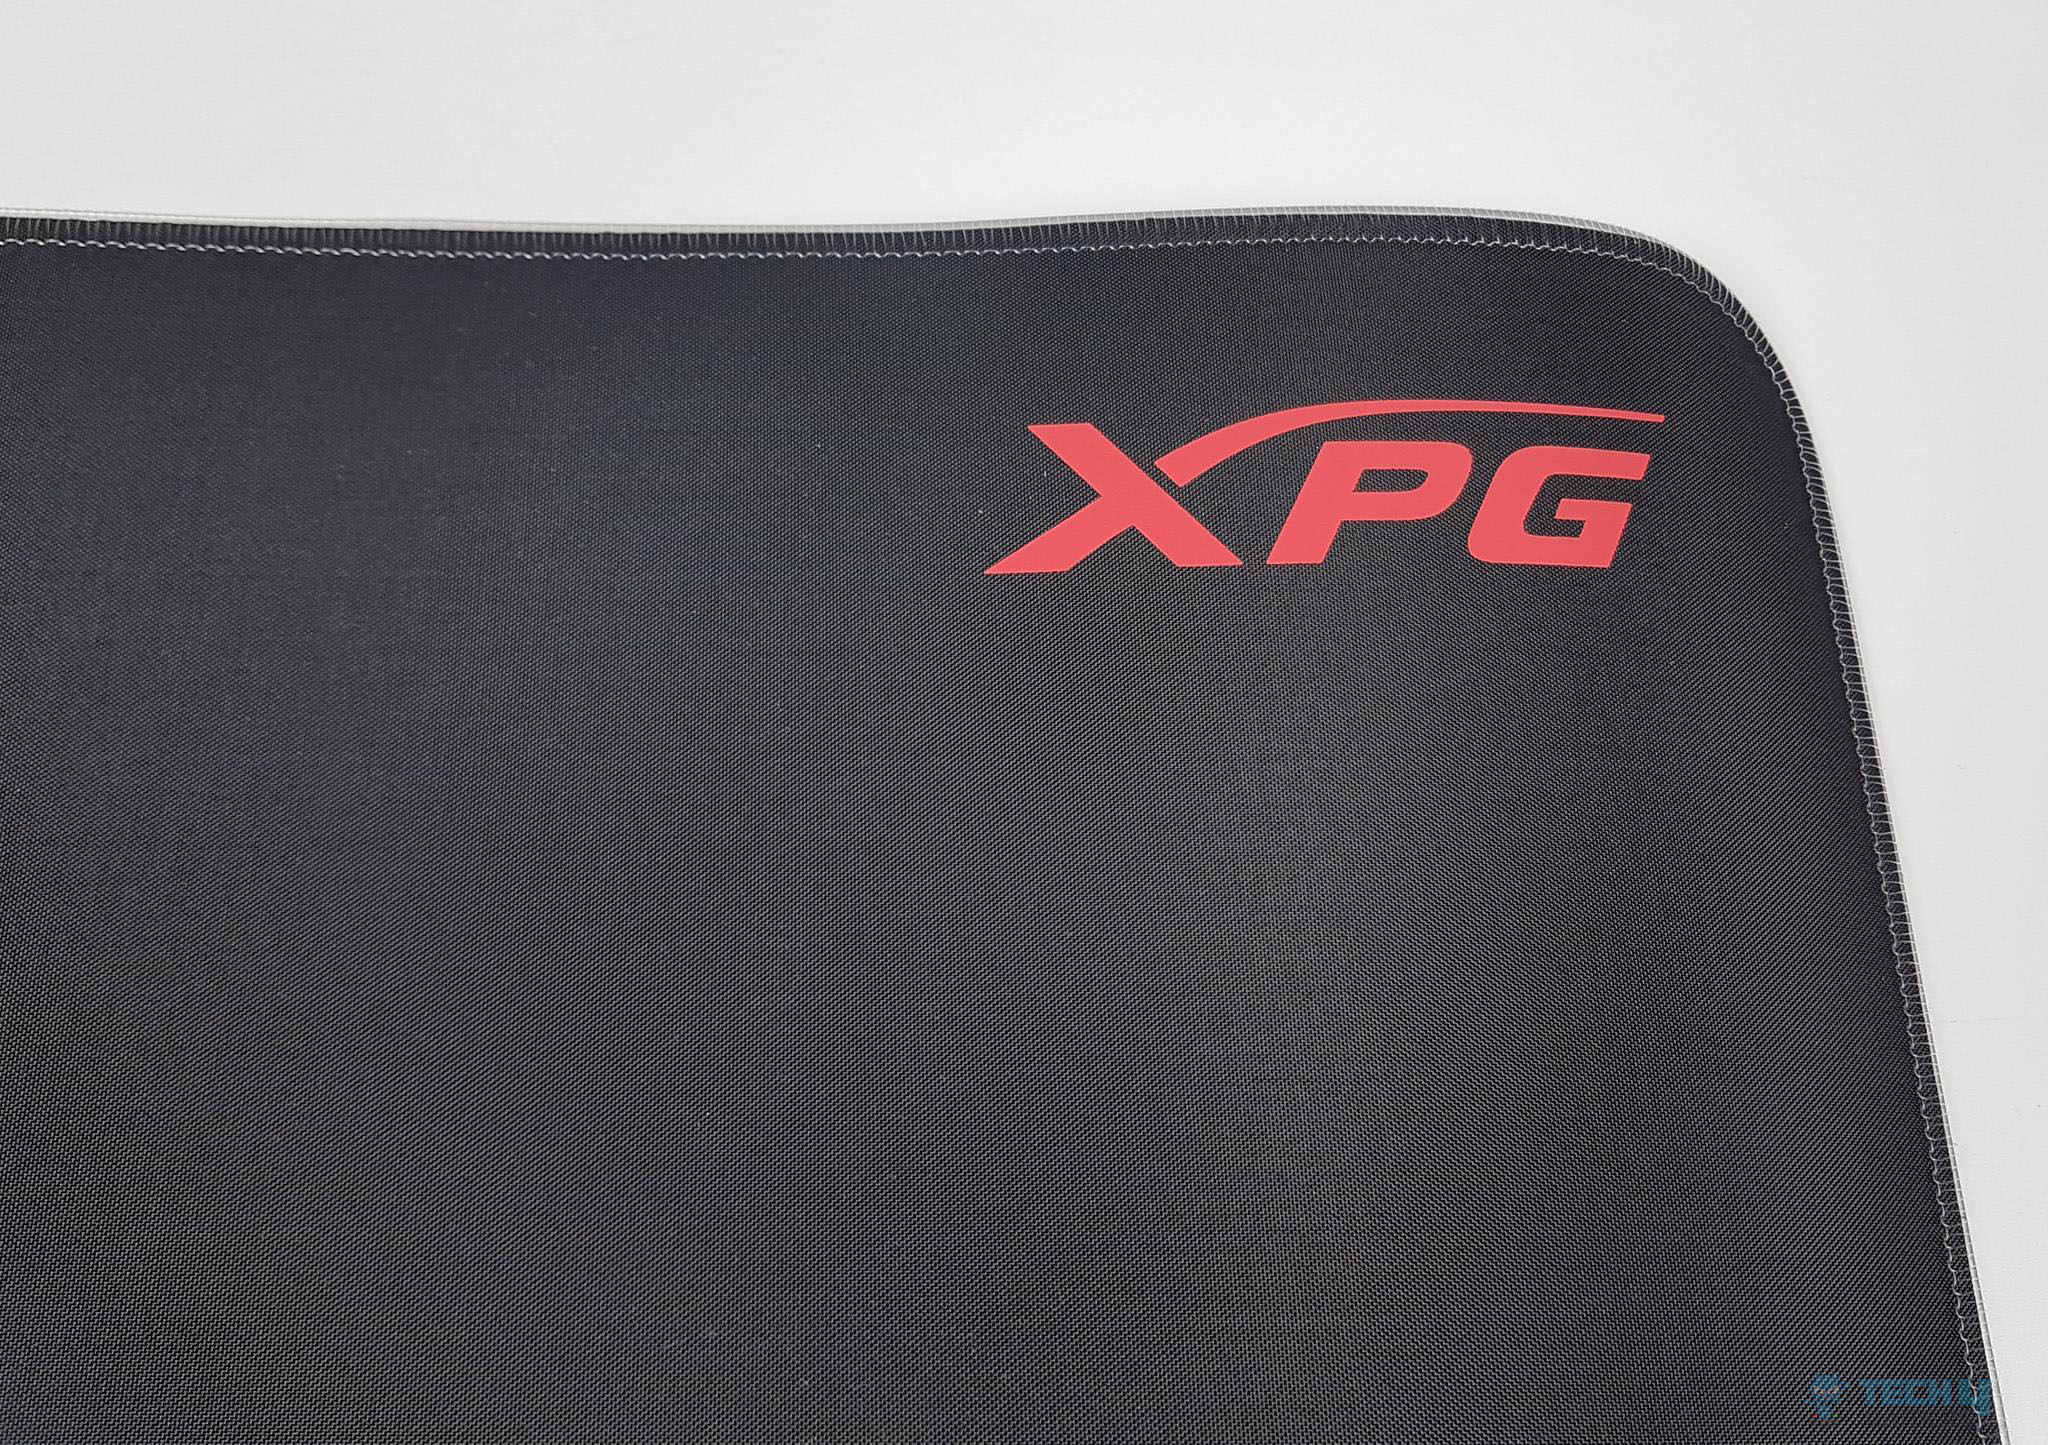 RGB xl mouse pad XPG Closer Look